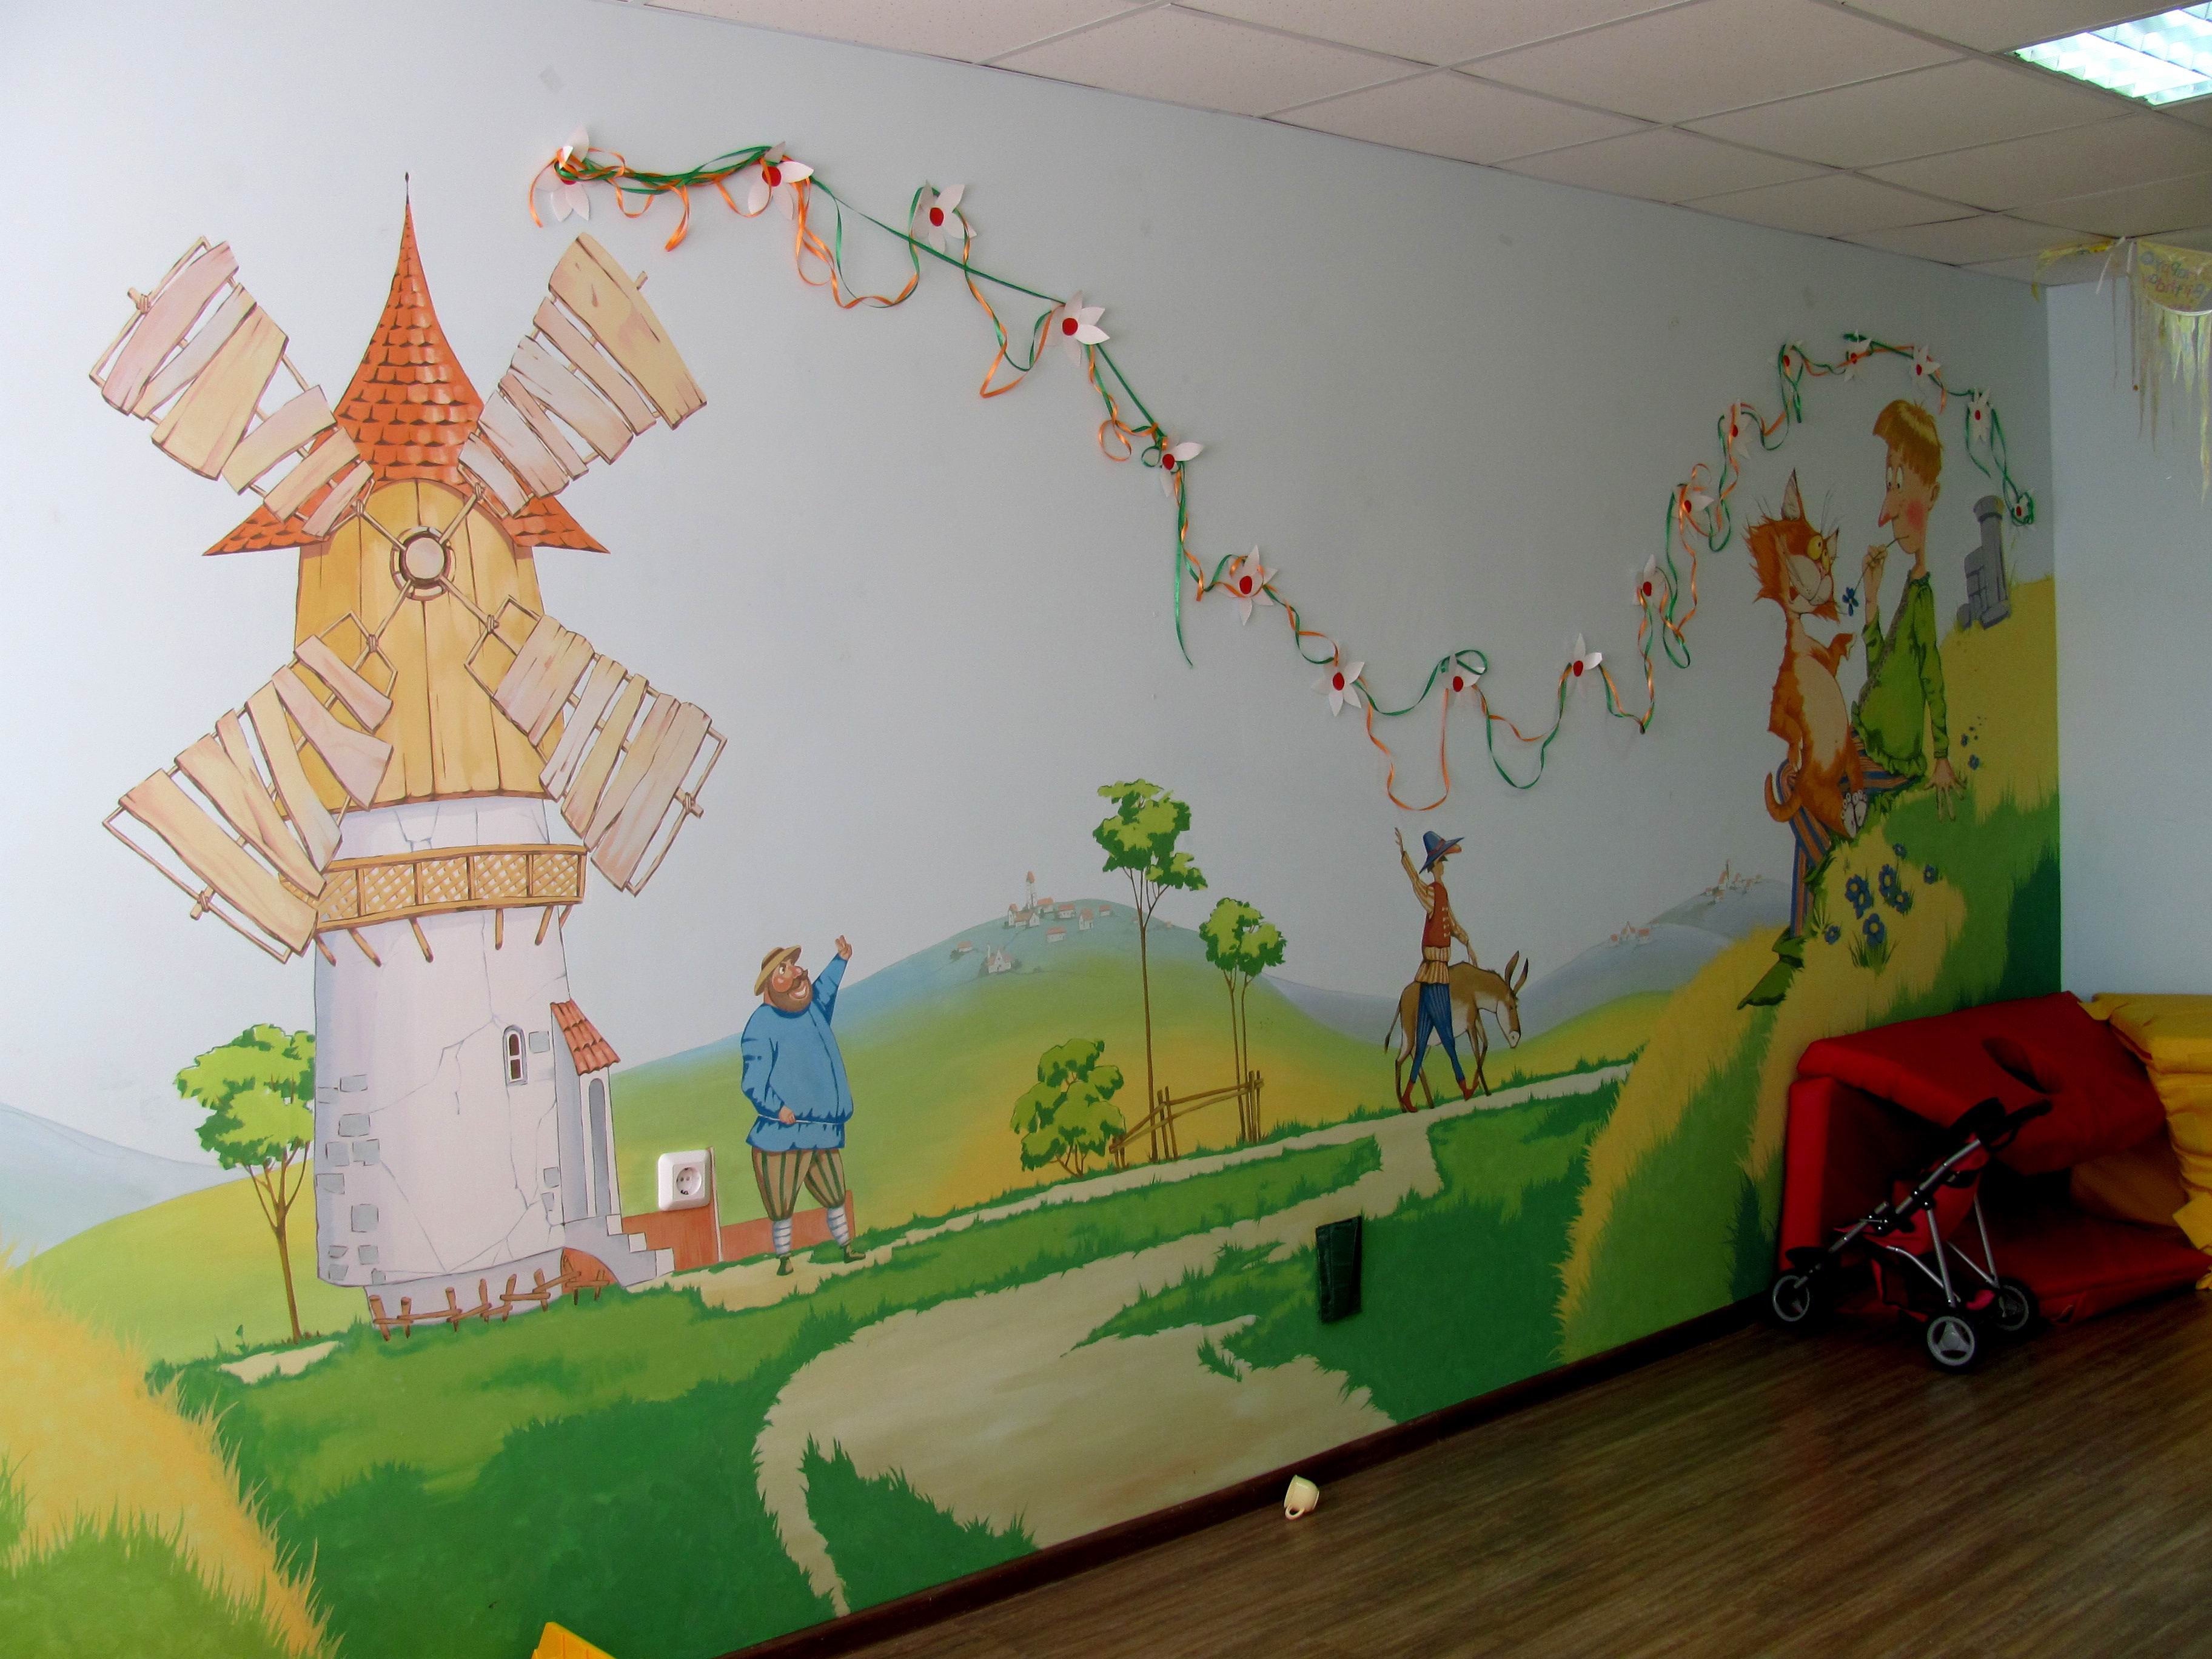 Расписать стены в детском саду